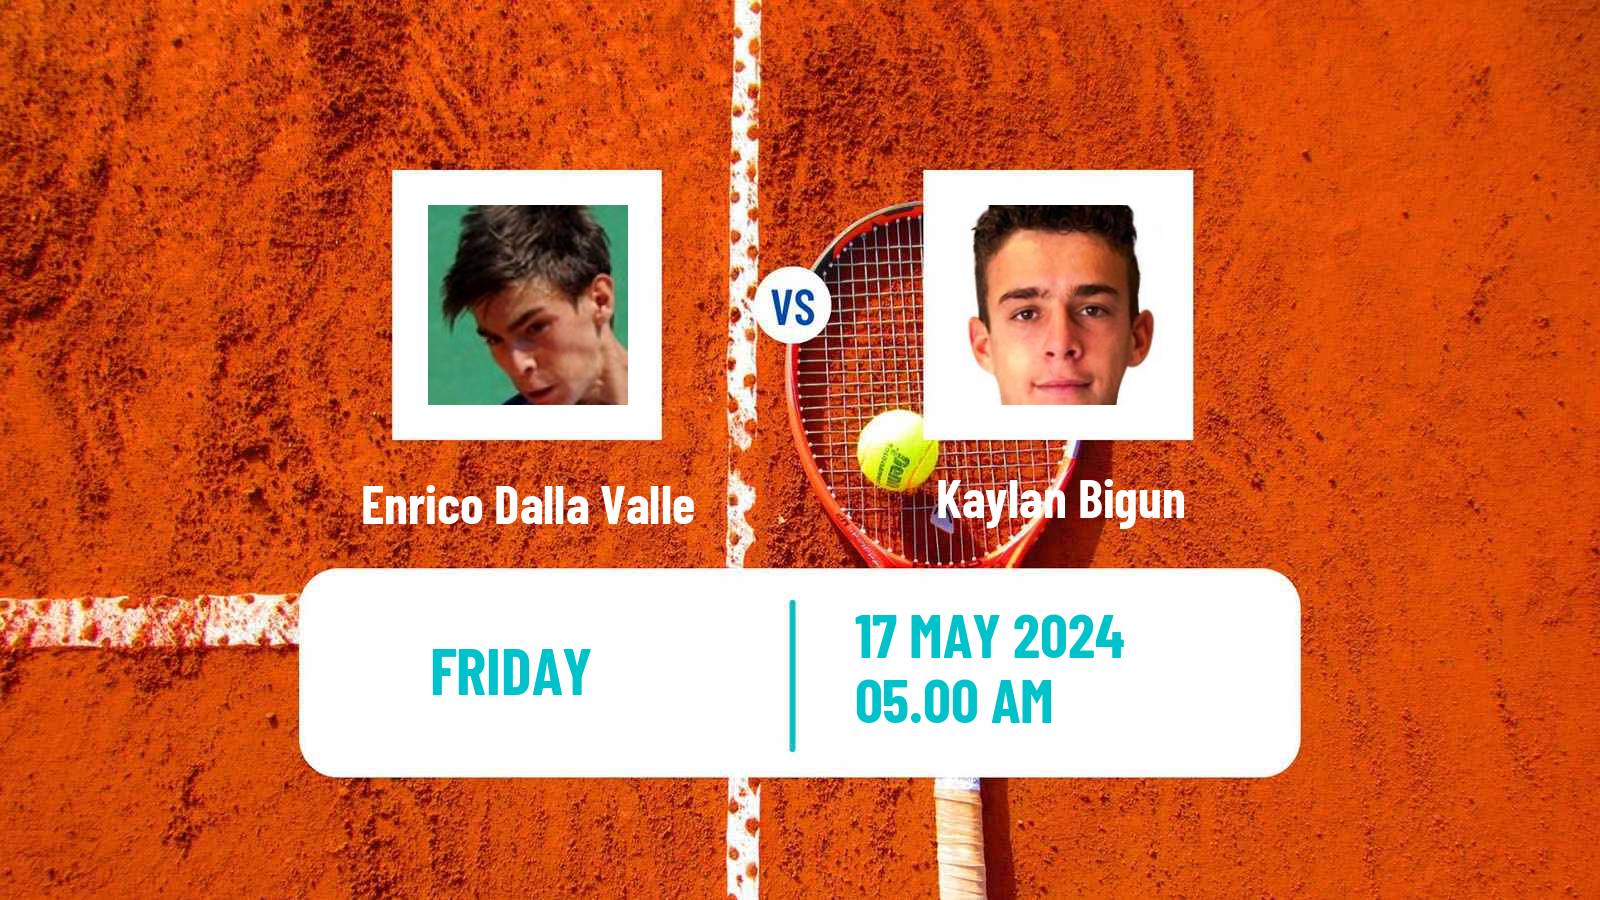 Tennis ITF M25 Reggio Emilia Men Enrico Dalla Valle - Kaylan Bigun